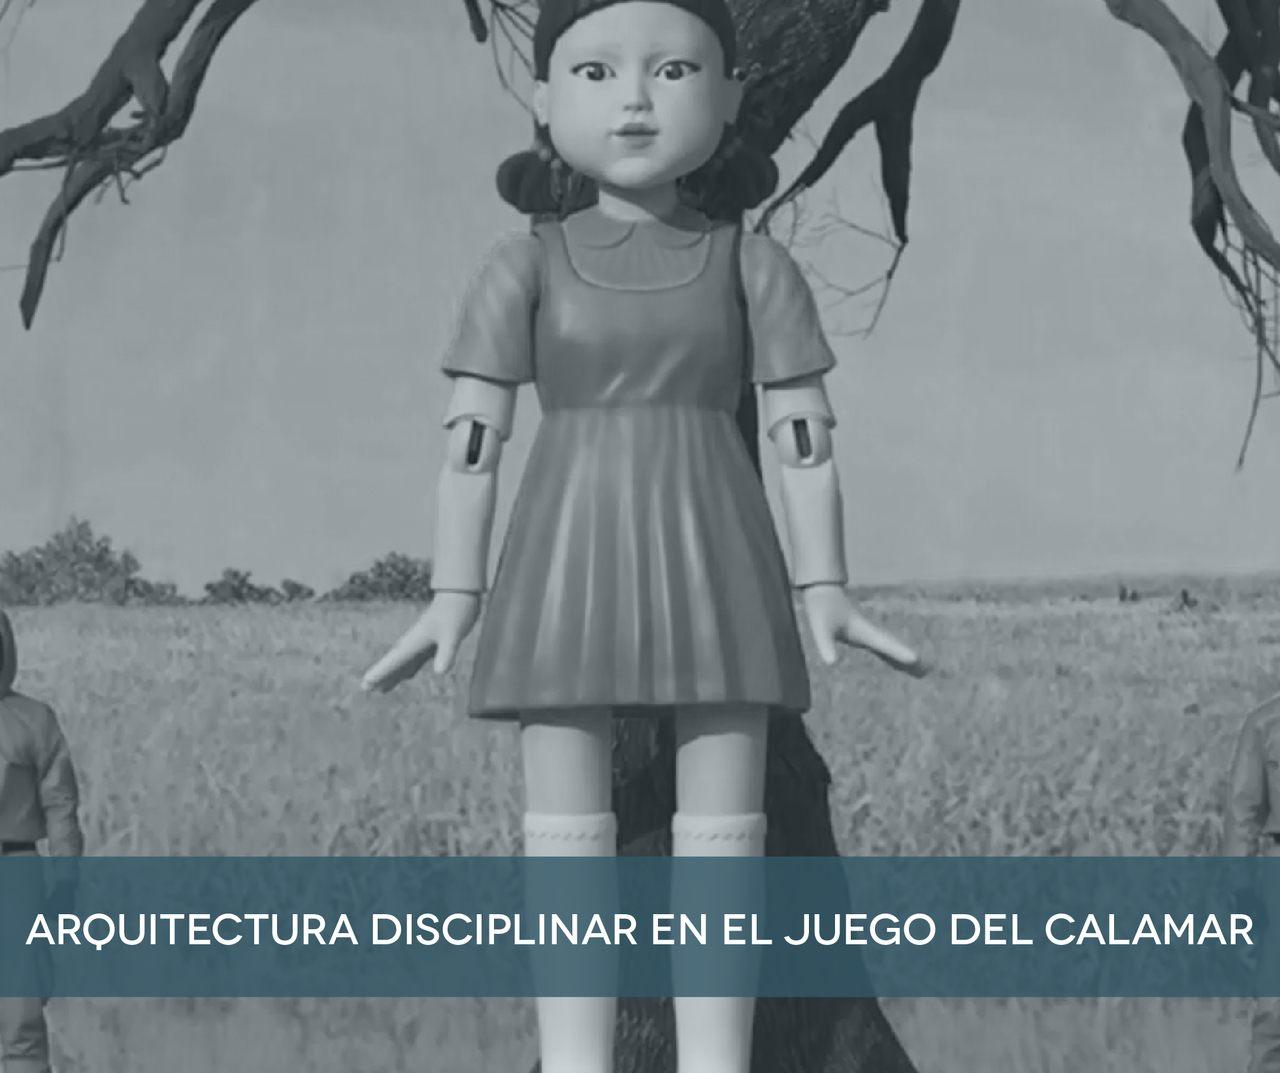 ARQUITECTURA DISCIPLINARIA Y SURVIVAL HORROR FILMS |El Juego del Calamar, El Hoyo y Cube